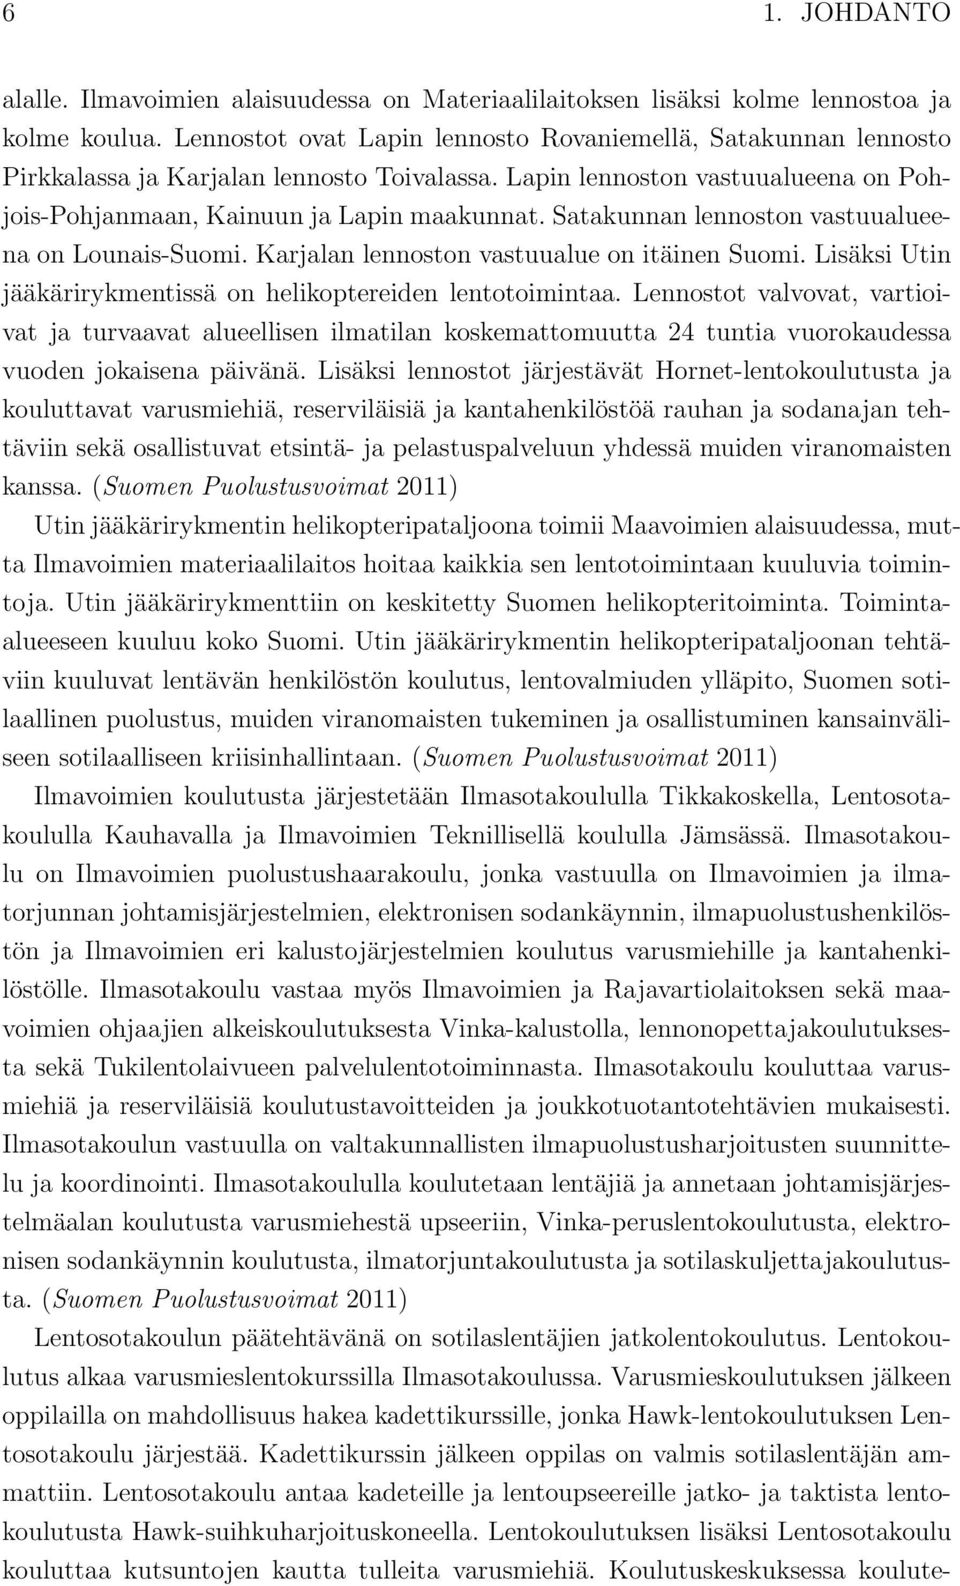 Satakunnan lennoston vastuualueena on Lounais-Suomi. Karjalan lennoston vastuualue on itäinen Suomi. Lisäksi Utin jääkärirykmentissä on helikoptereiden lentotoimintaa.